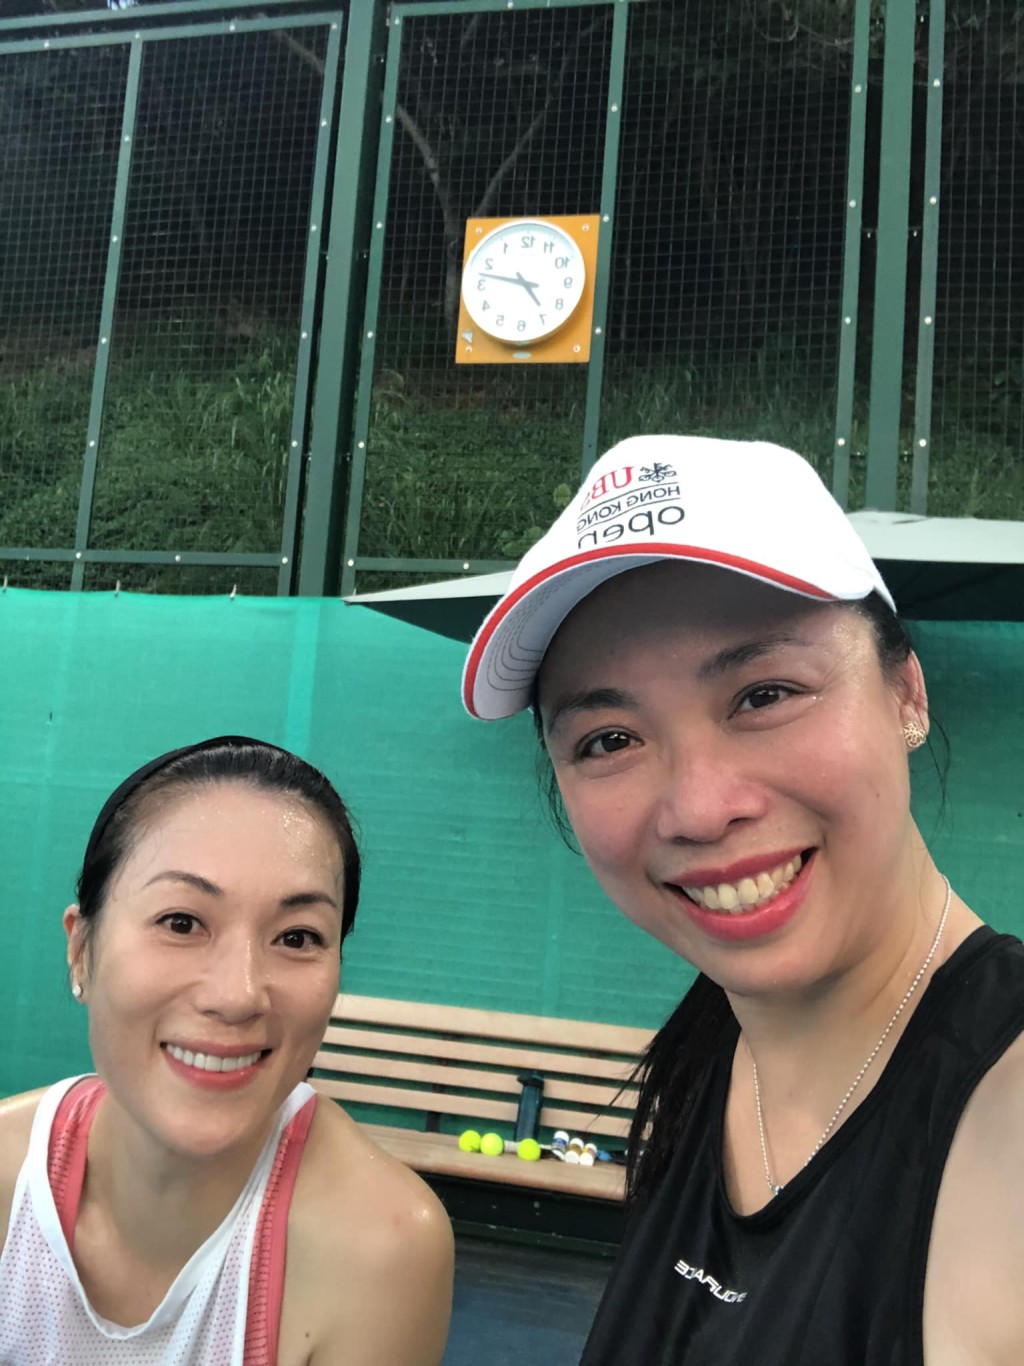 张可颐（左）感恩有个不怕晒的tennis buddy陪打网球，仲可以全身爆汗爽到炸。